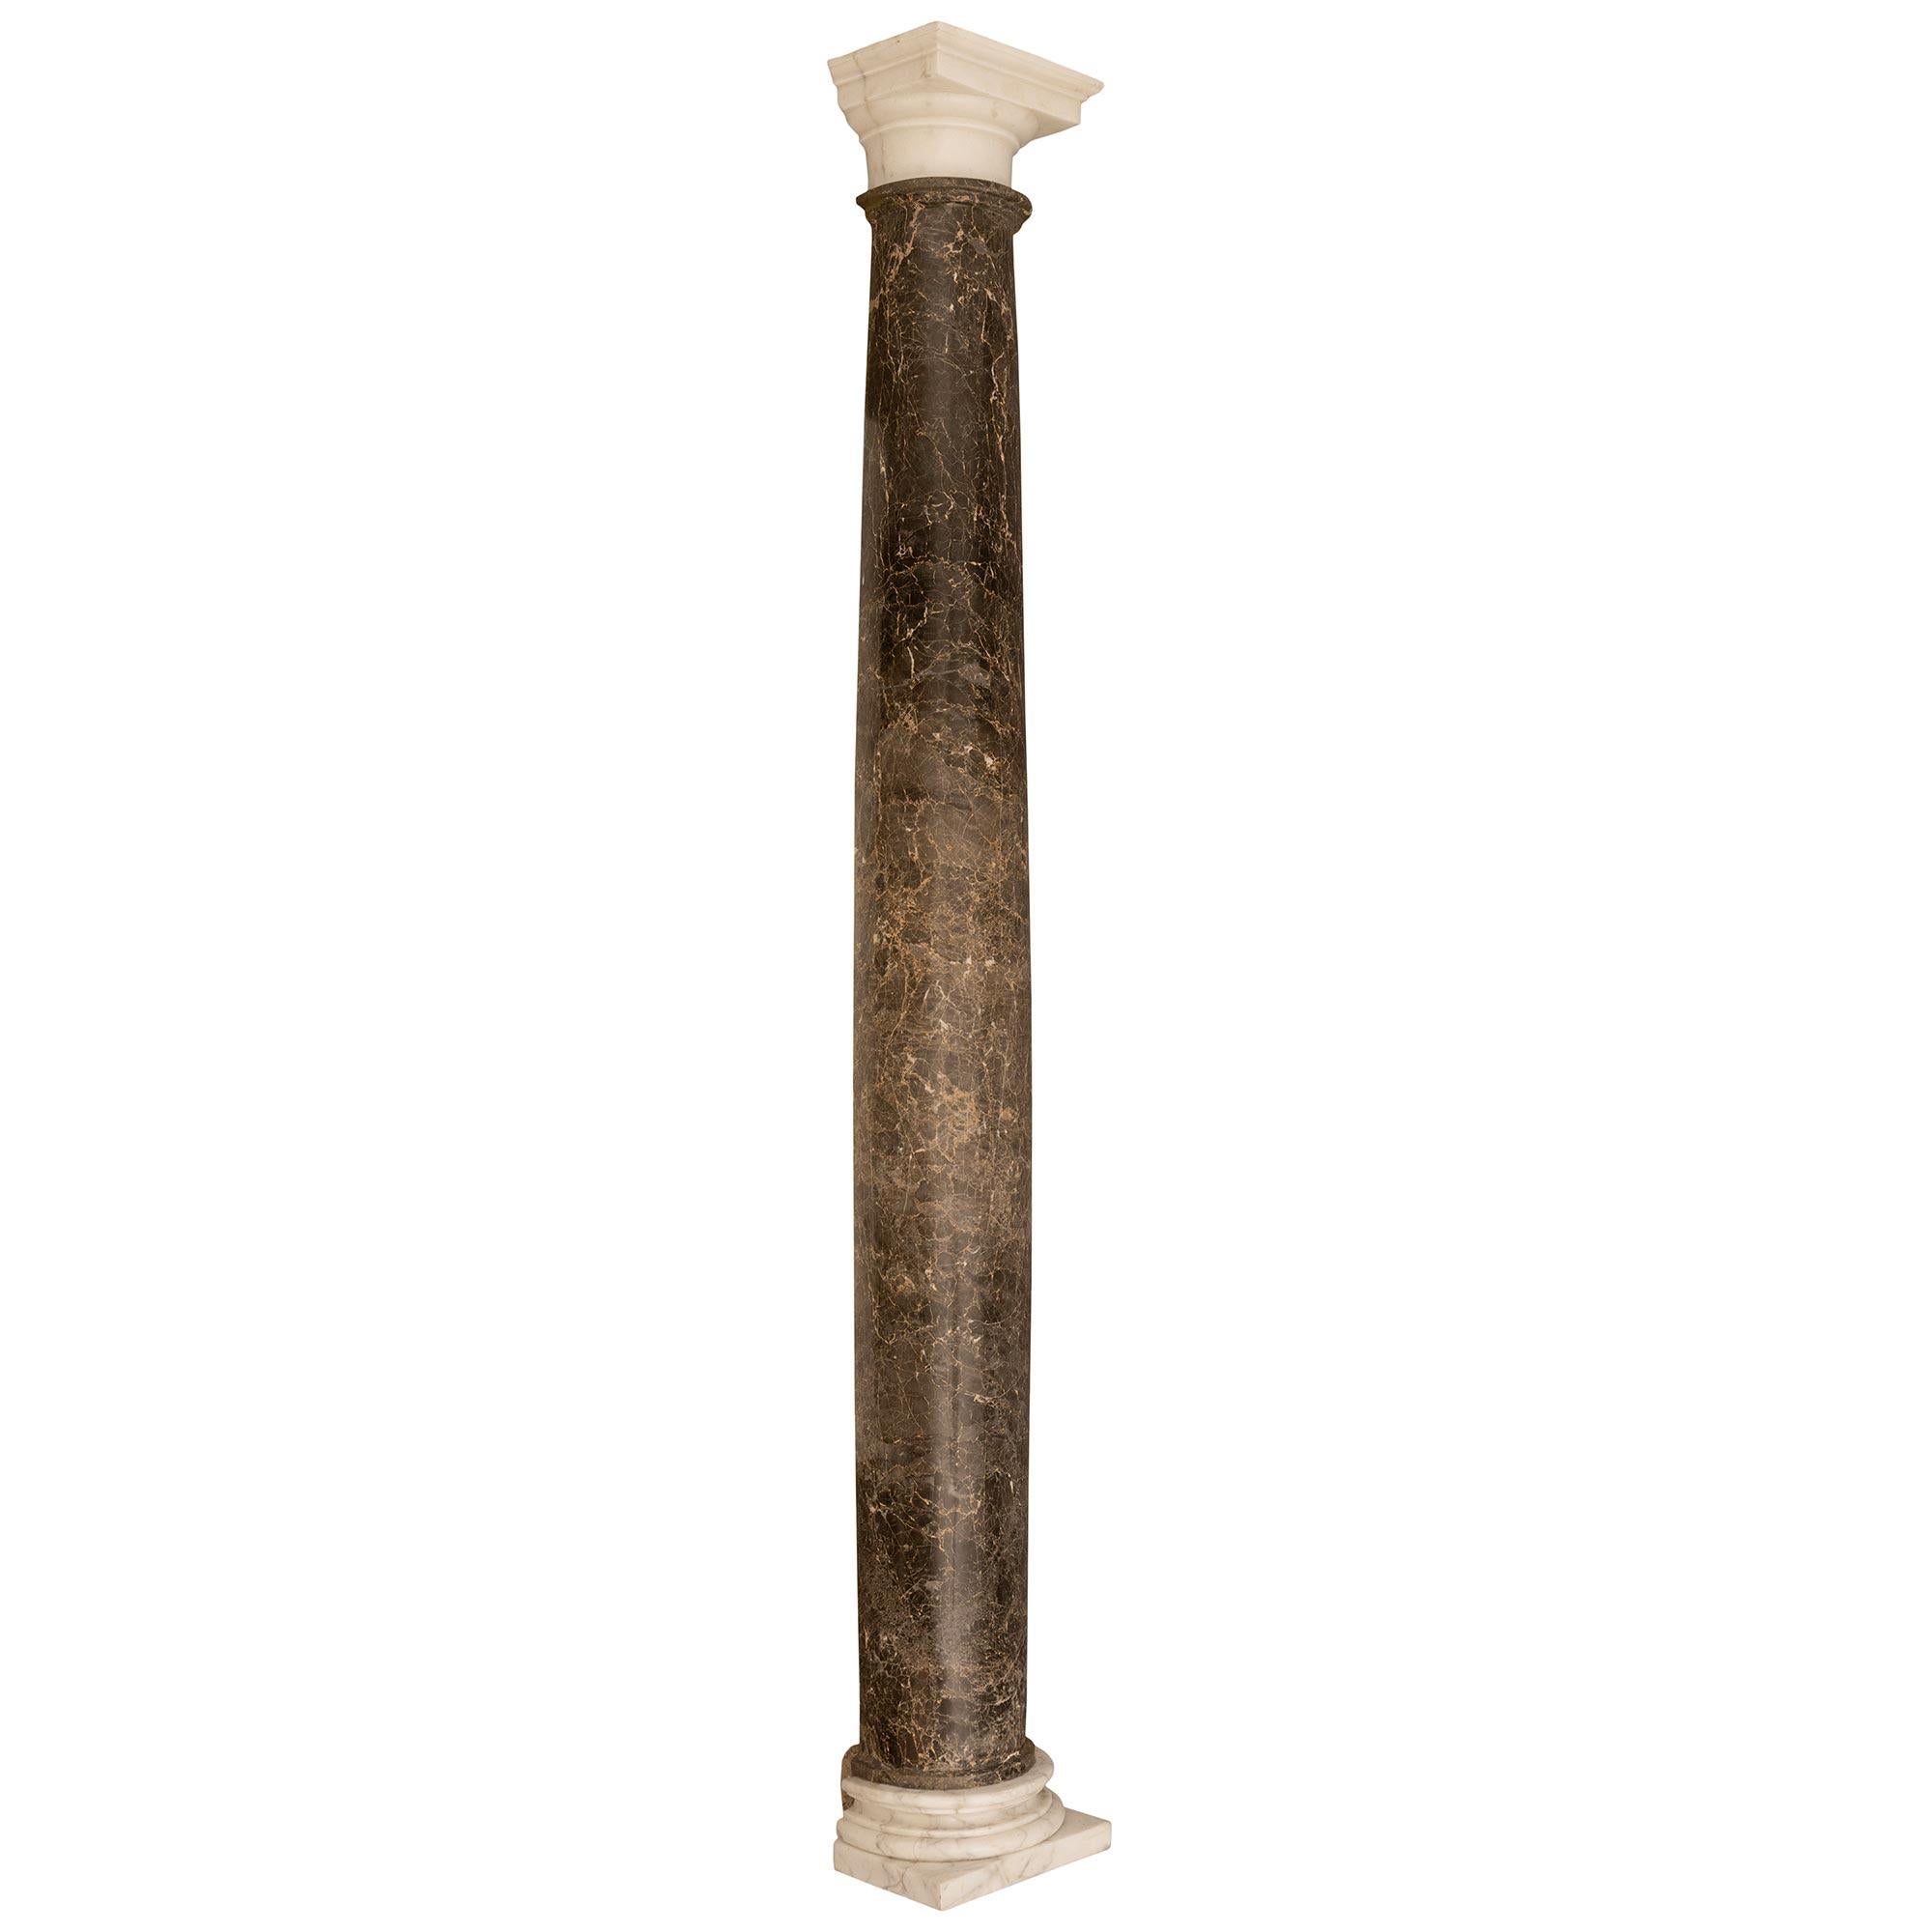 Une belle paire de colonnes en marbre italiennes du XIXe siècle, extrêmement décoratives. Chaque colonne demi-ronde est posée sur son socle et son chapiteau d'origine en marbre blanc de Carrare tacheté. Les colonnes centrales demi-rondes et effilées